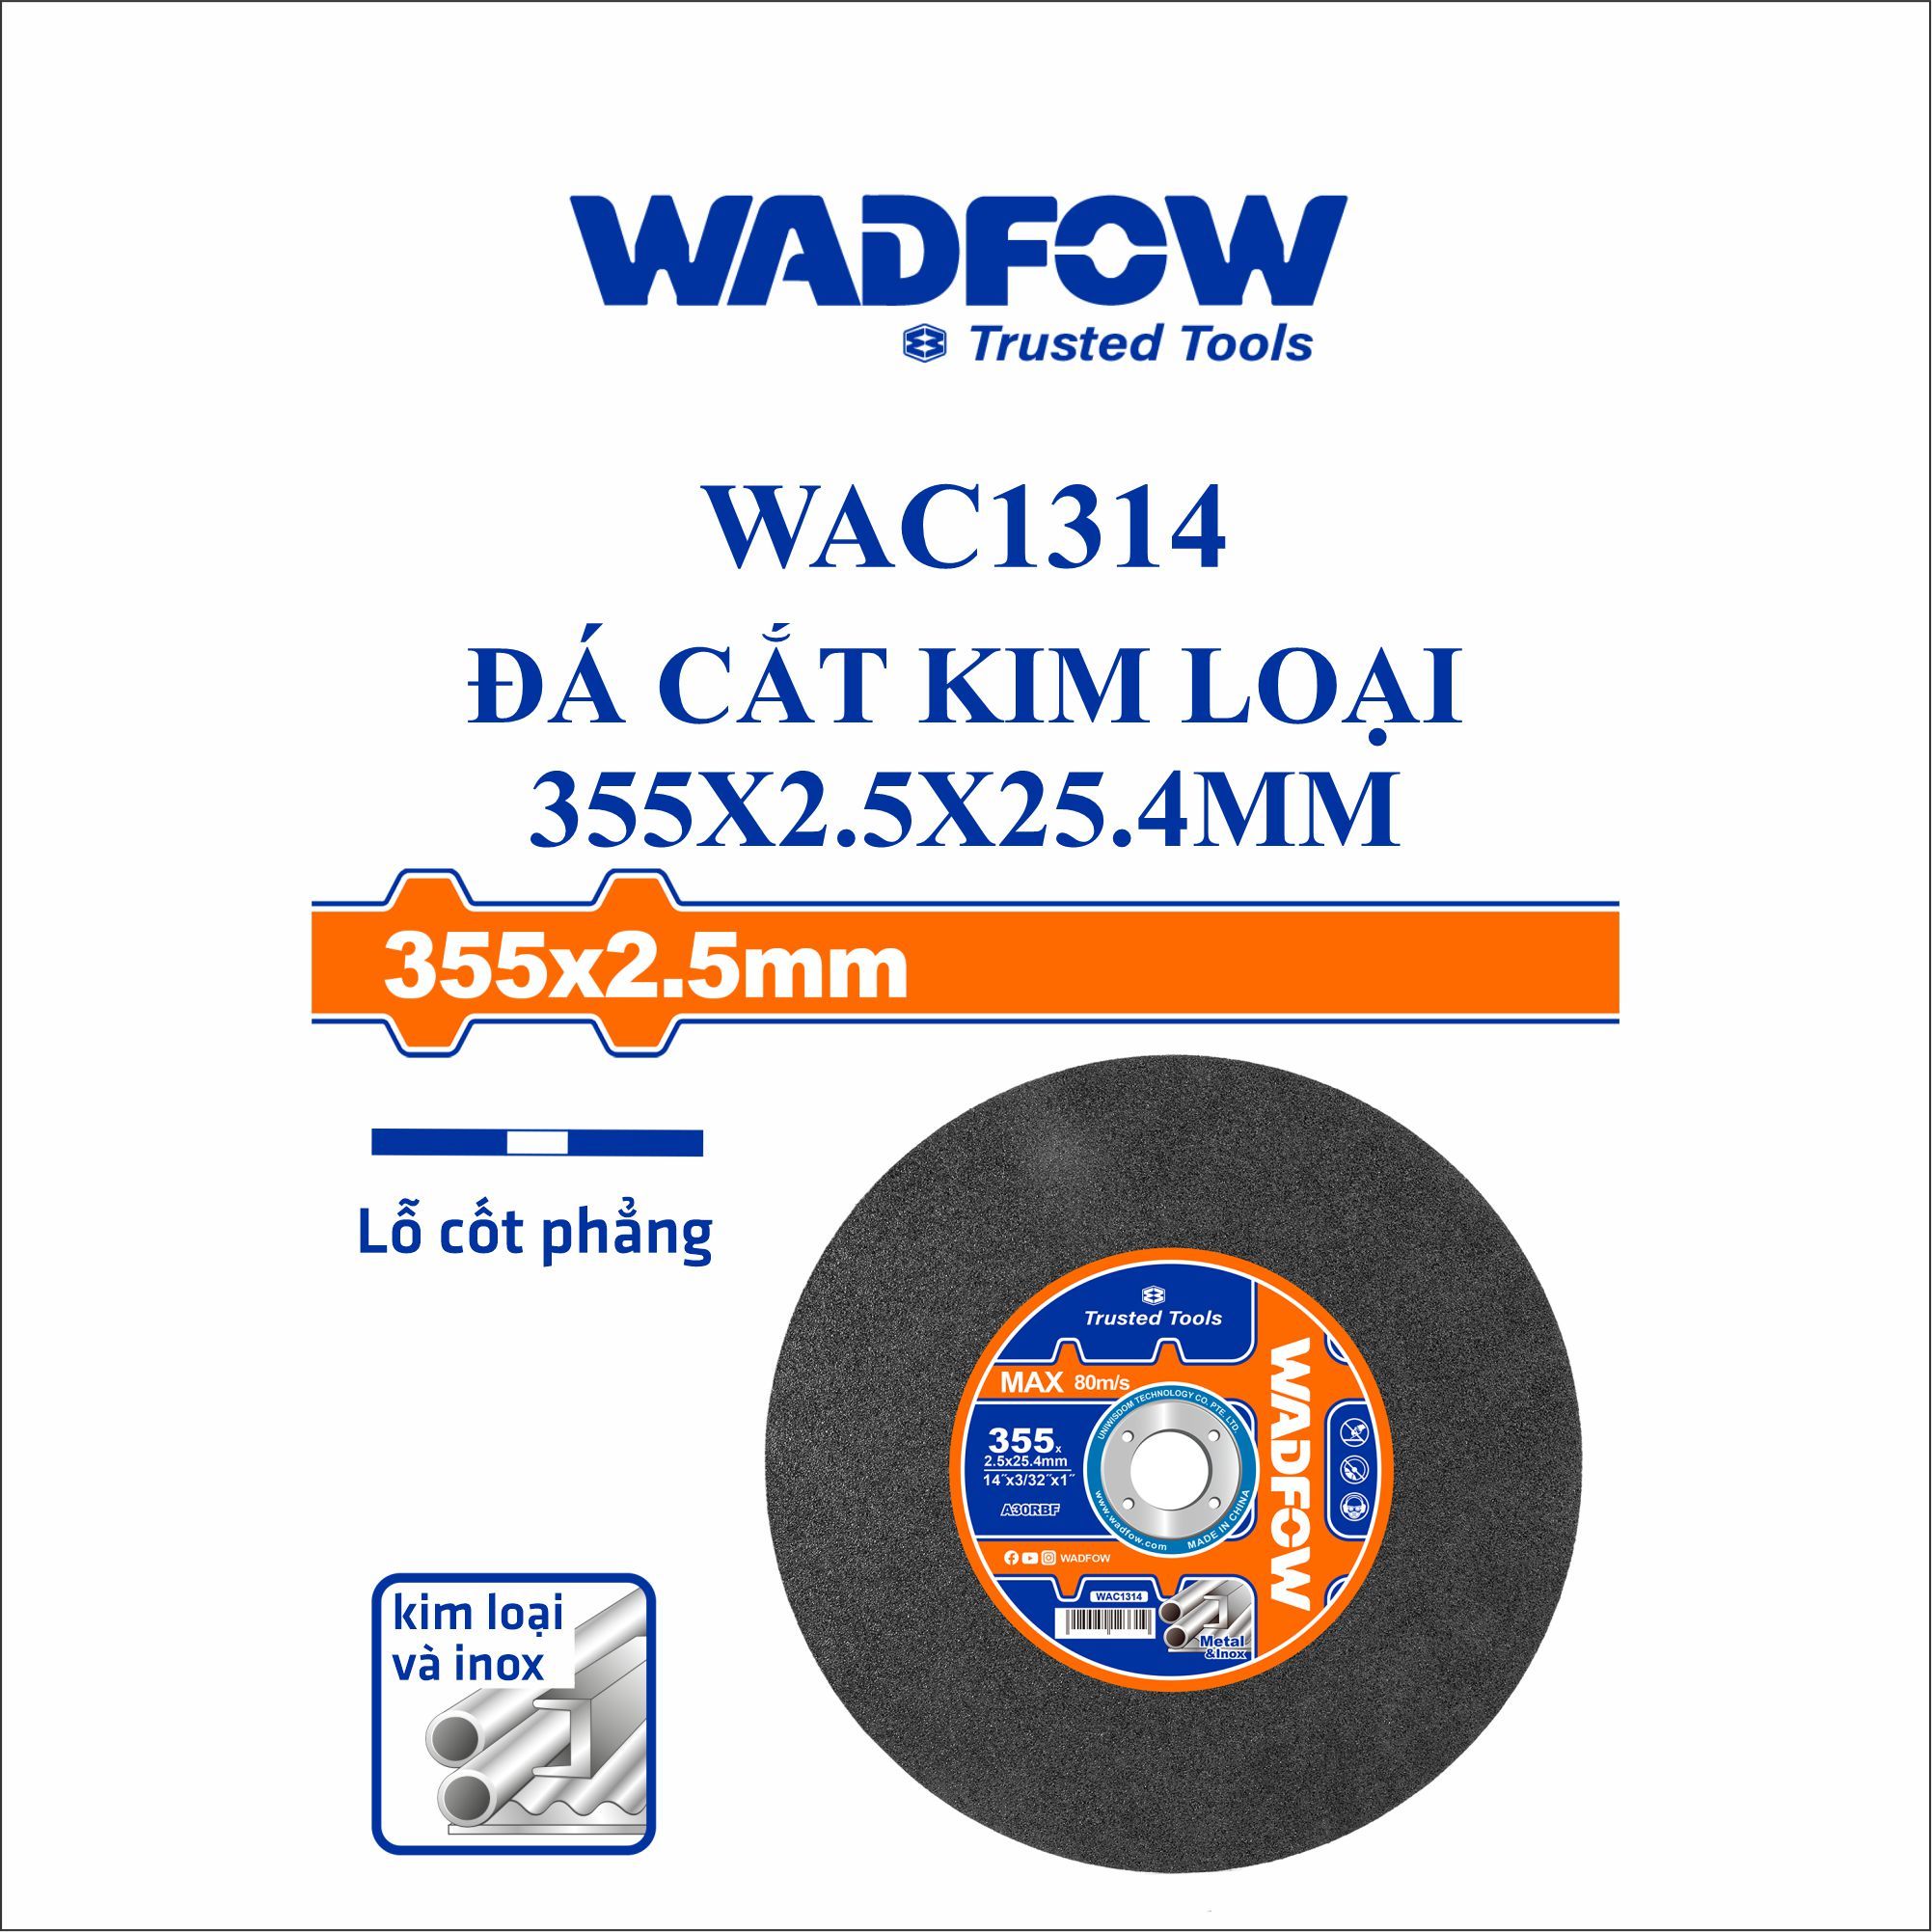  Đá cắt kim loại 355x2.5x25.4mm WADFOW WAC1314 